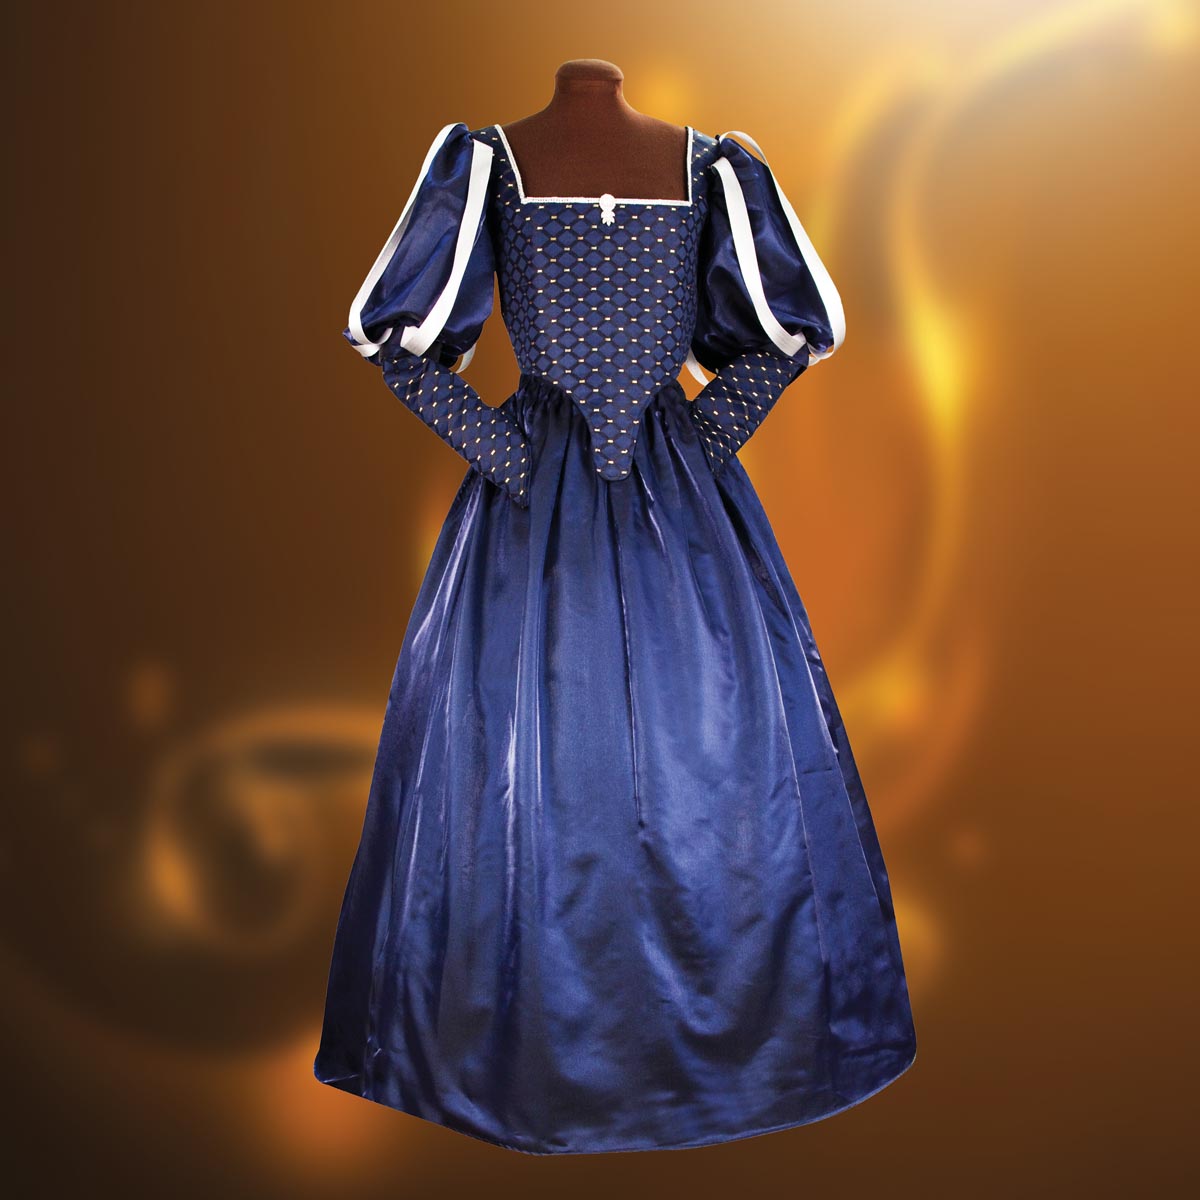 Ladies Renaissance Milady's Gown, Size XL